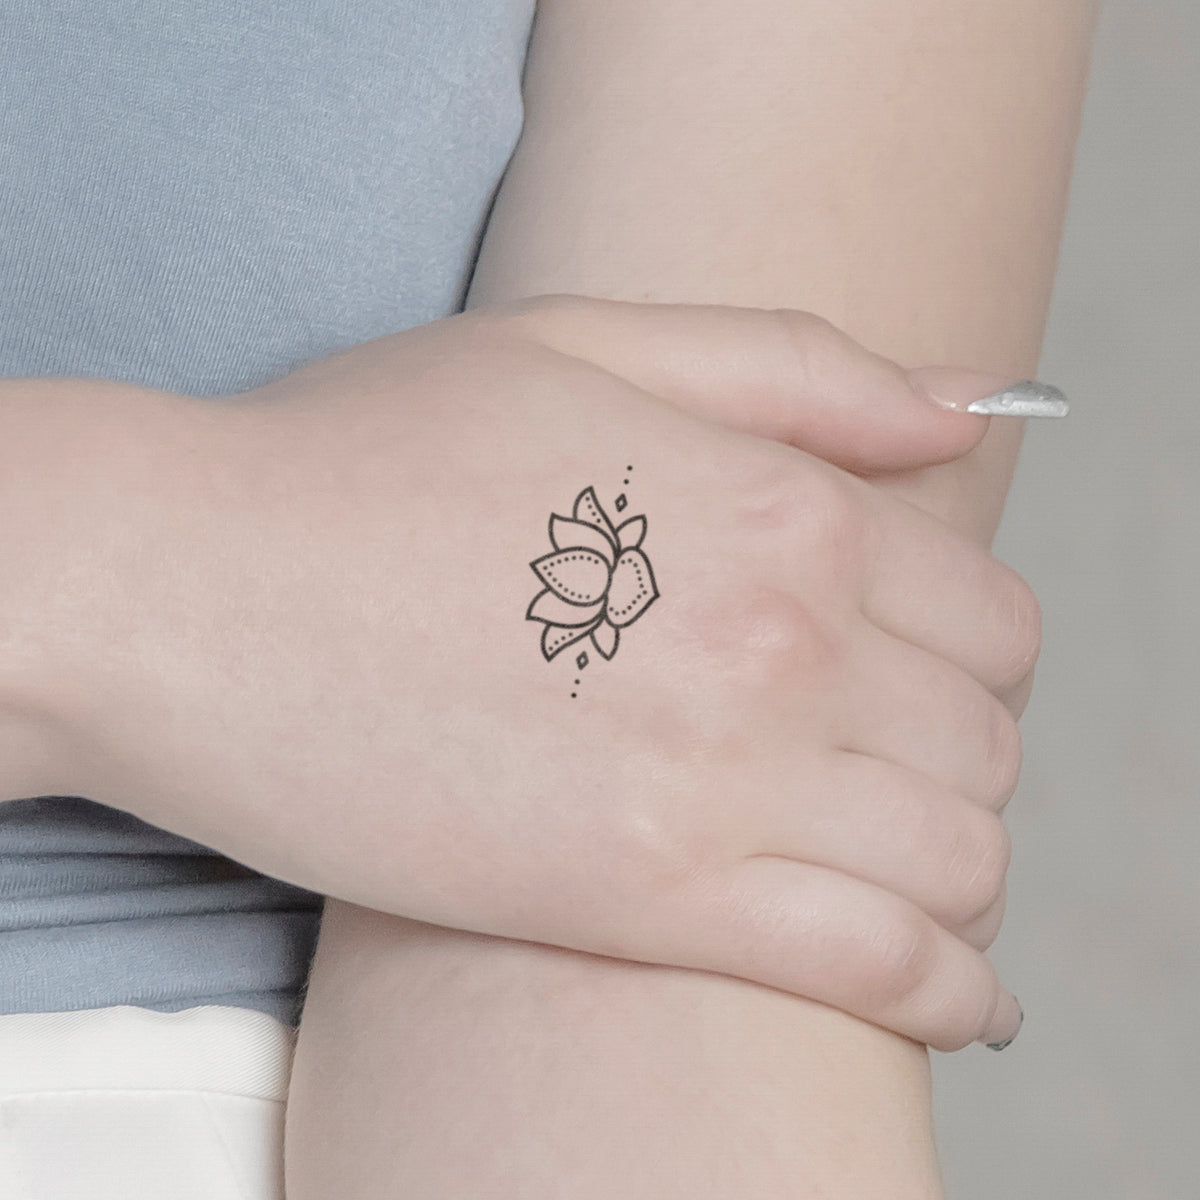 Flash Tattoo l Lotus Mandala temporary tattoo – The Flash Tattoo